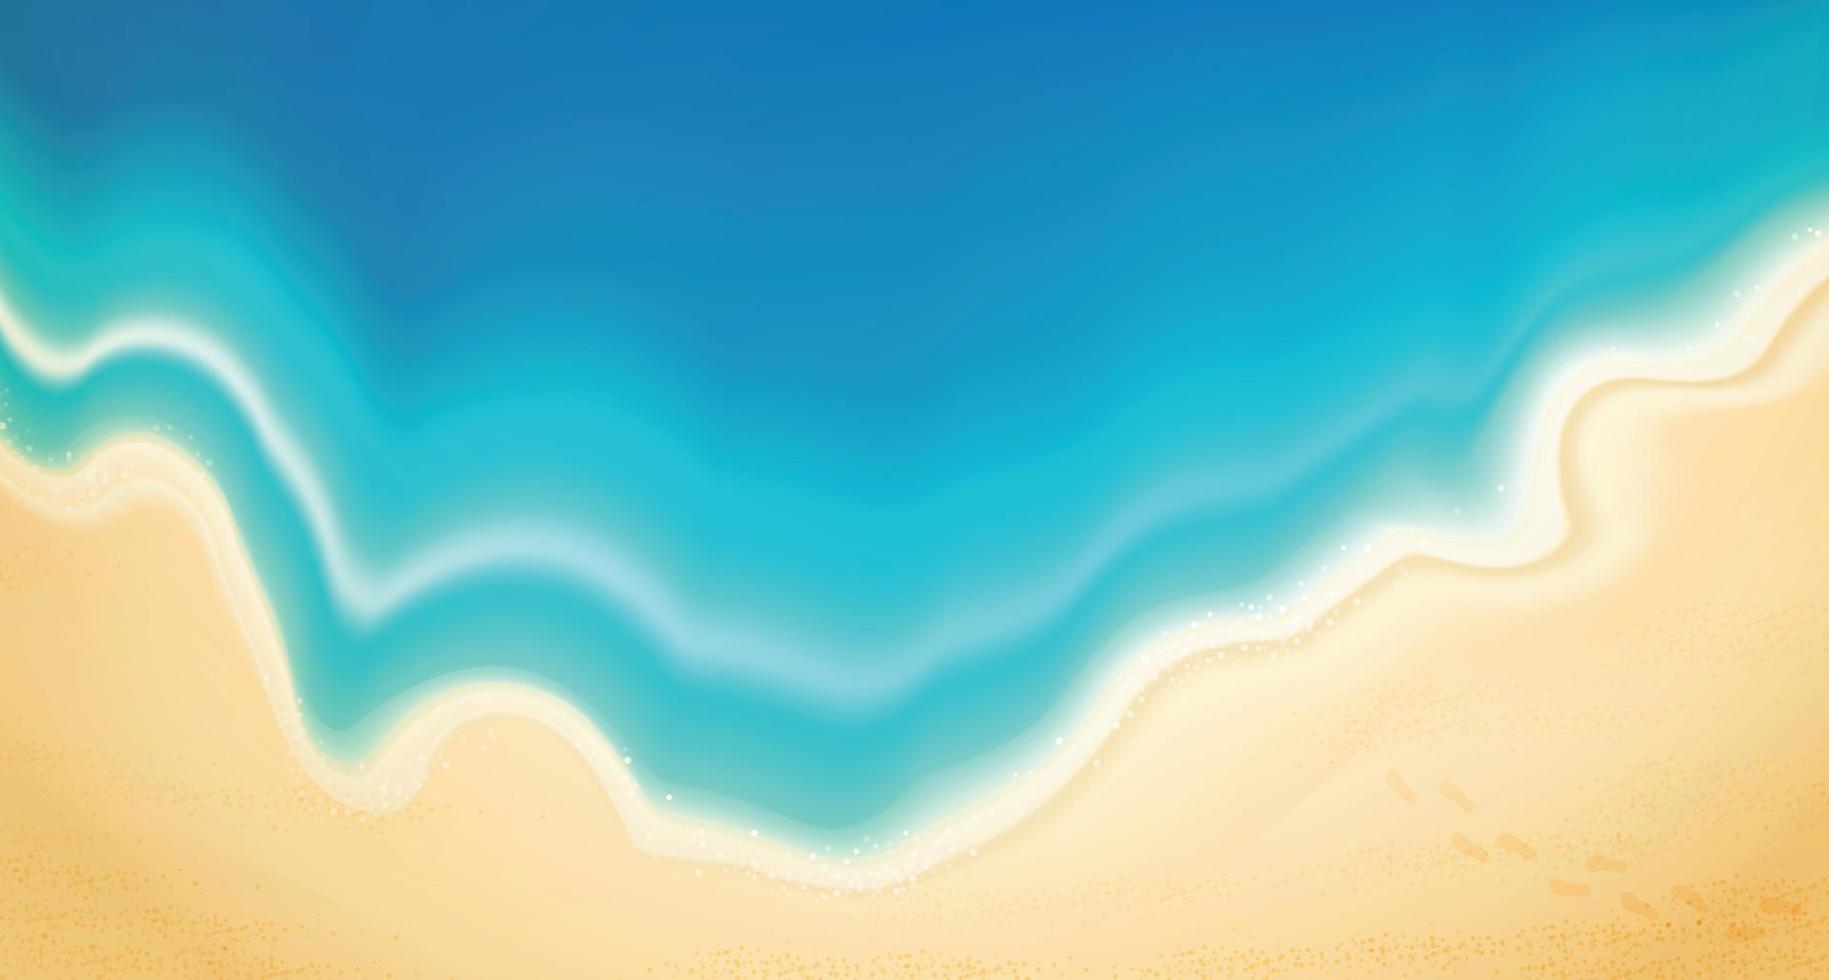 bovenaanzicht zomer met waterspeeltoestellen op het strand geplaatst. strandachtergrond met zwemring, sandalen, paraplu's, ballen, zeester en zee. vectorillustratie. vector